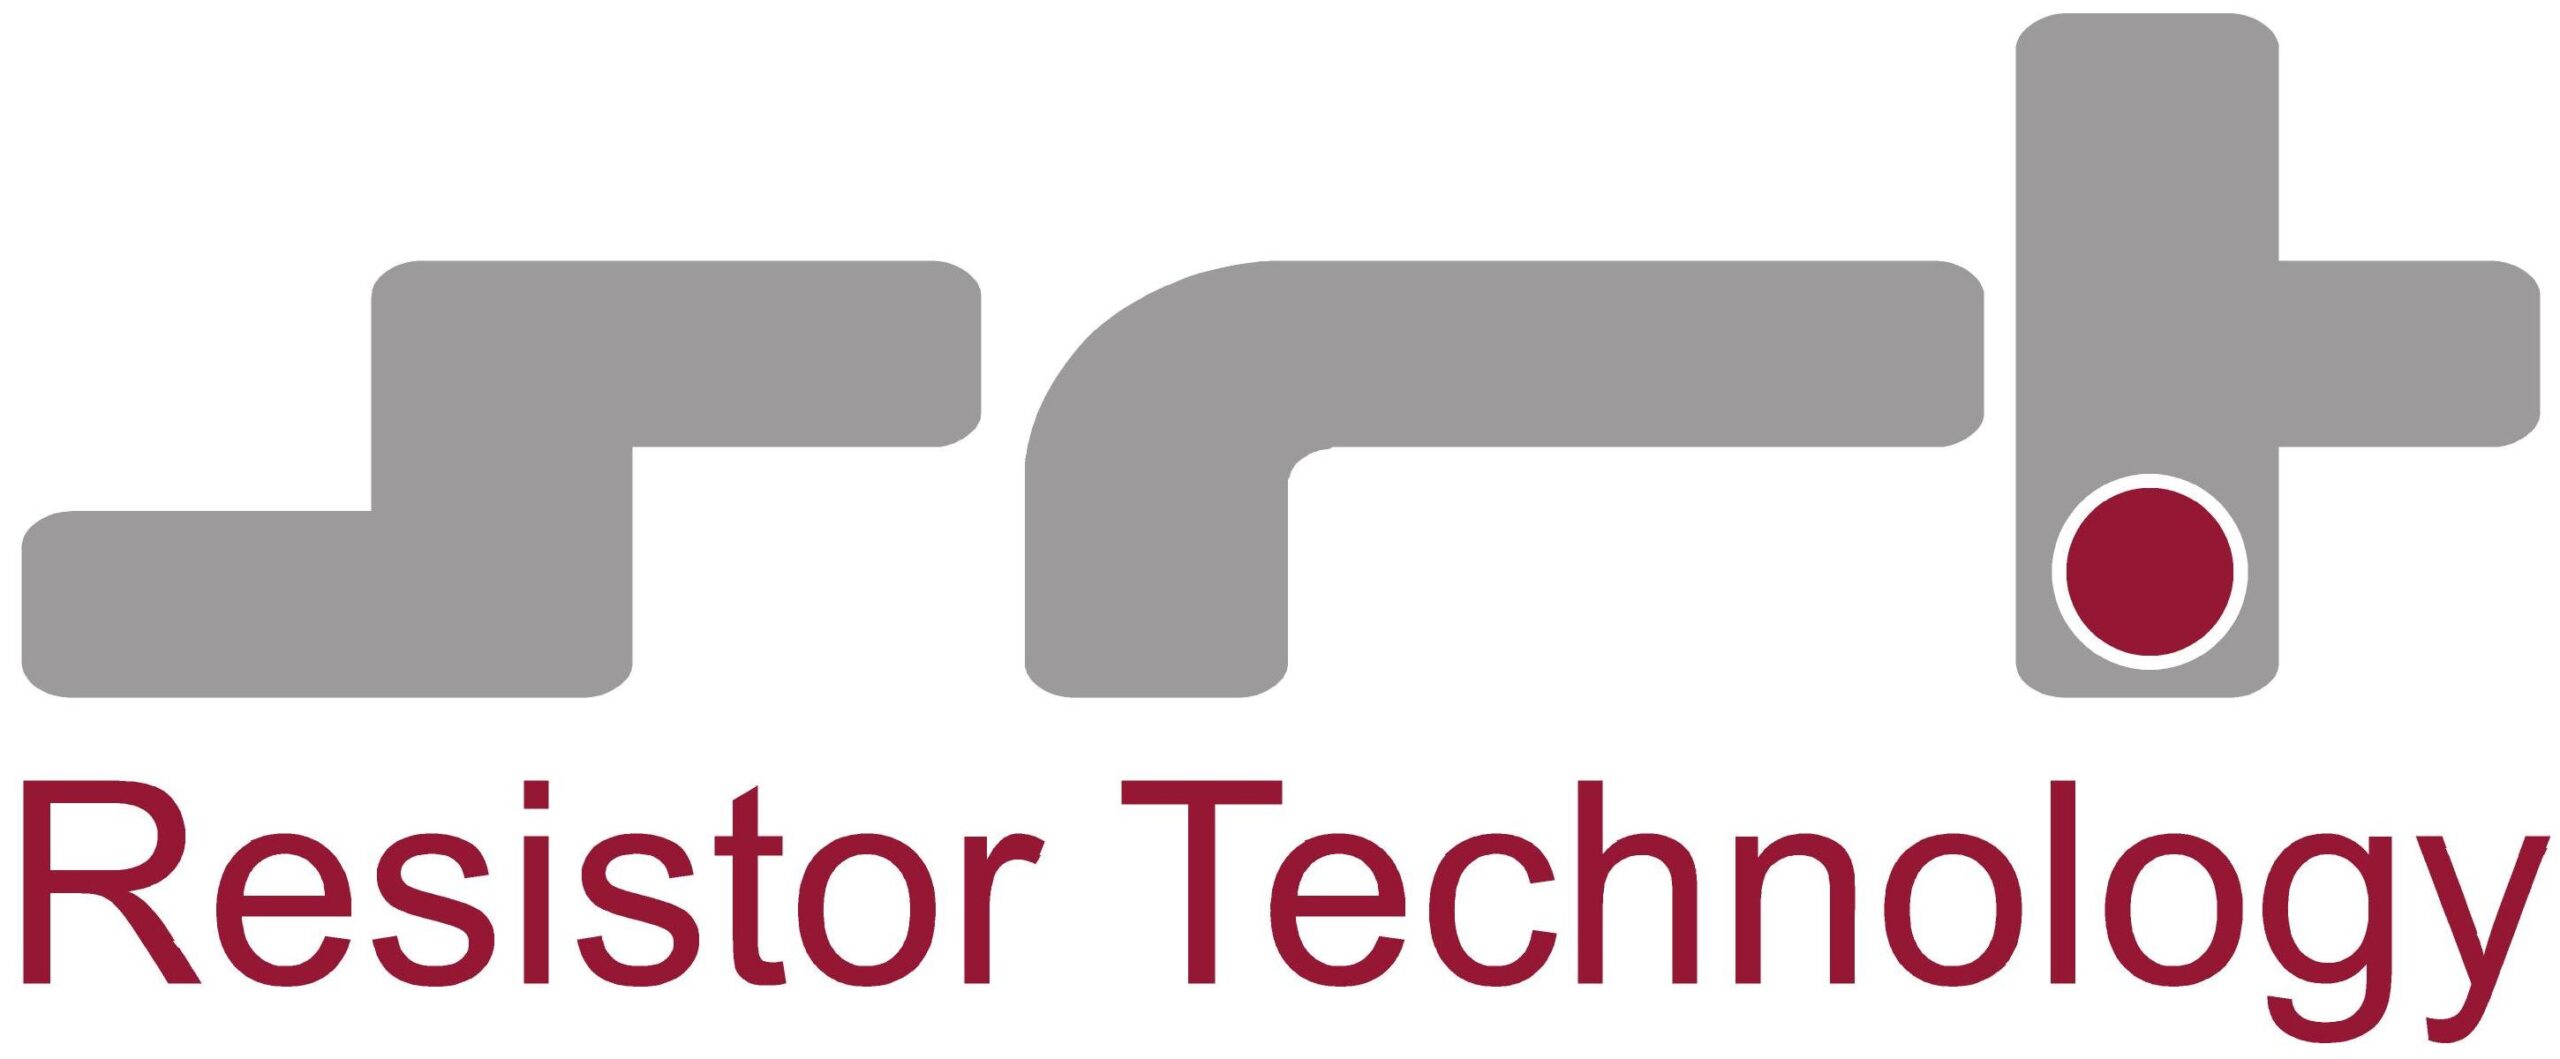 SRT Resistor Technology Company Logo 2020